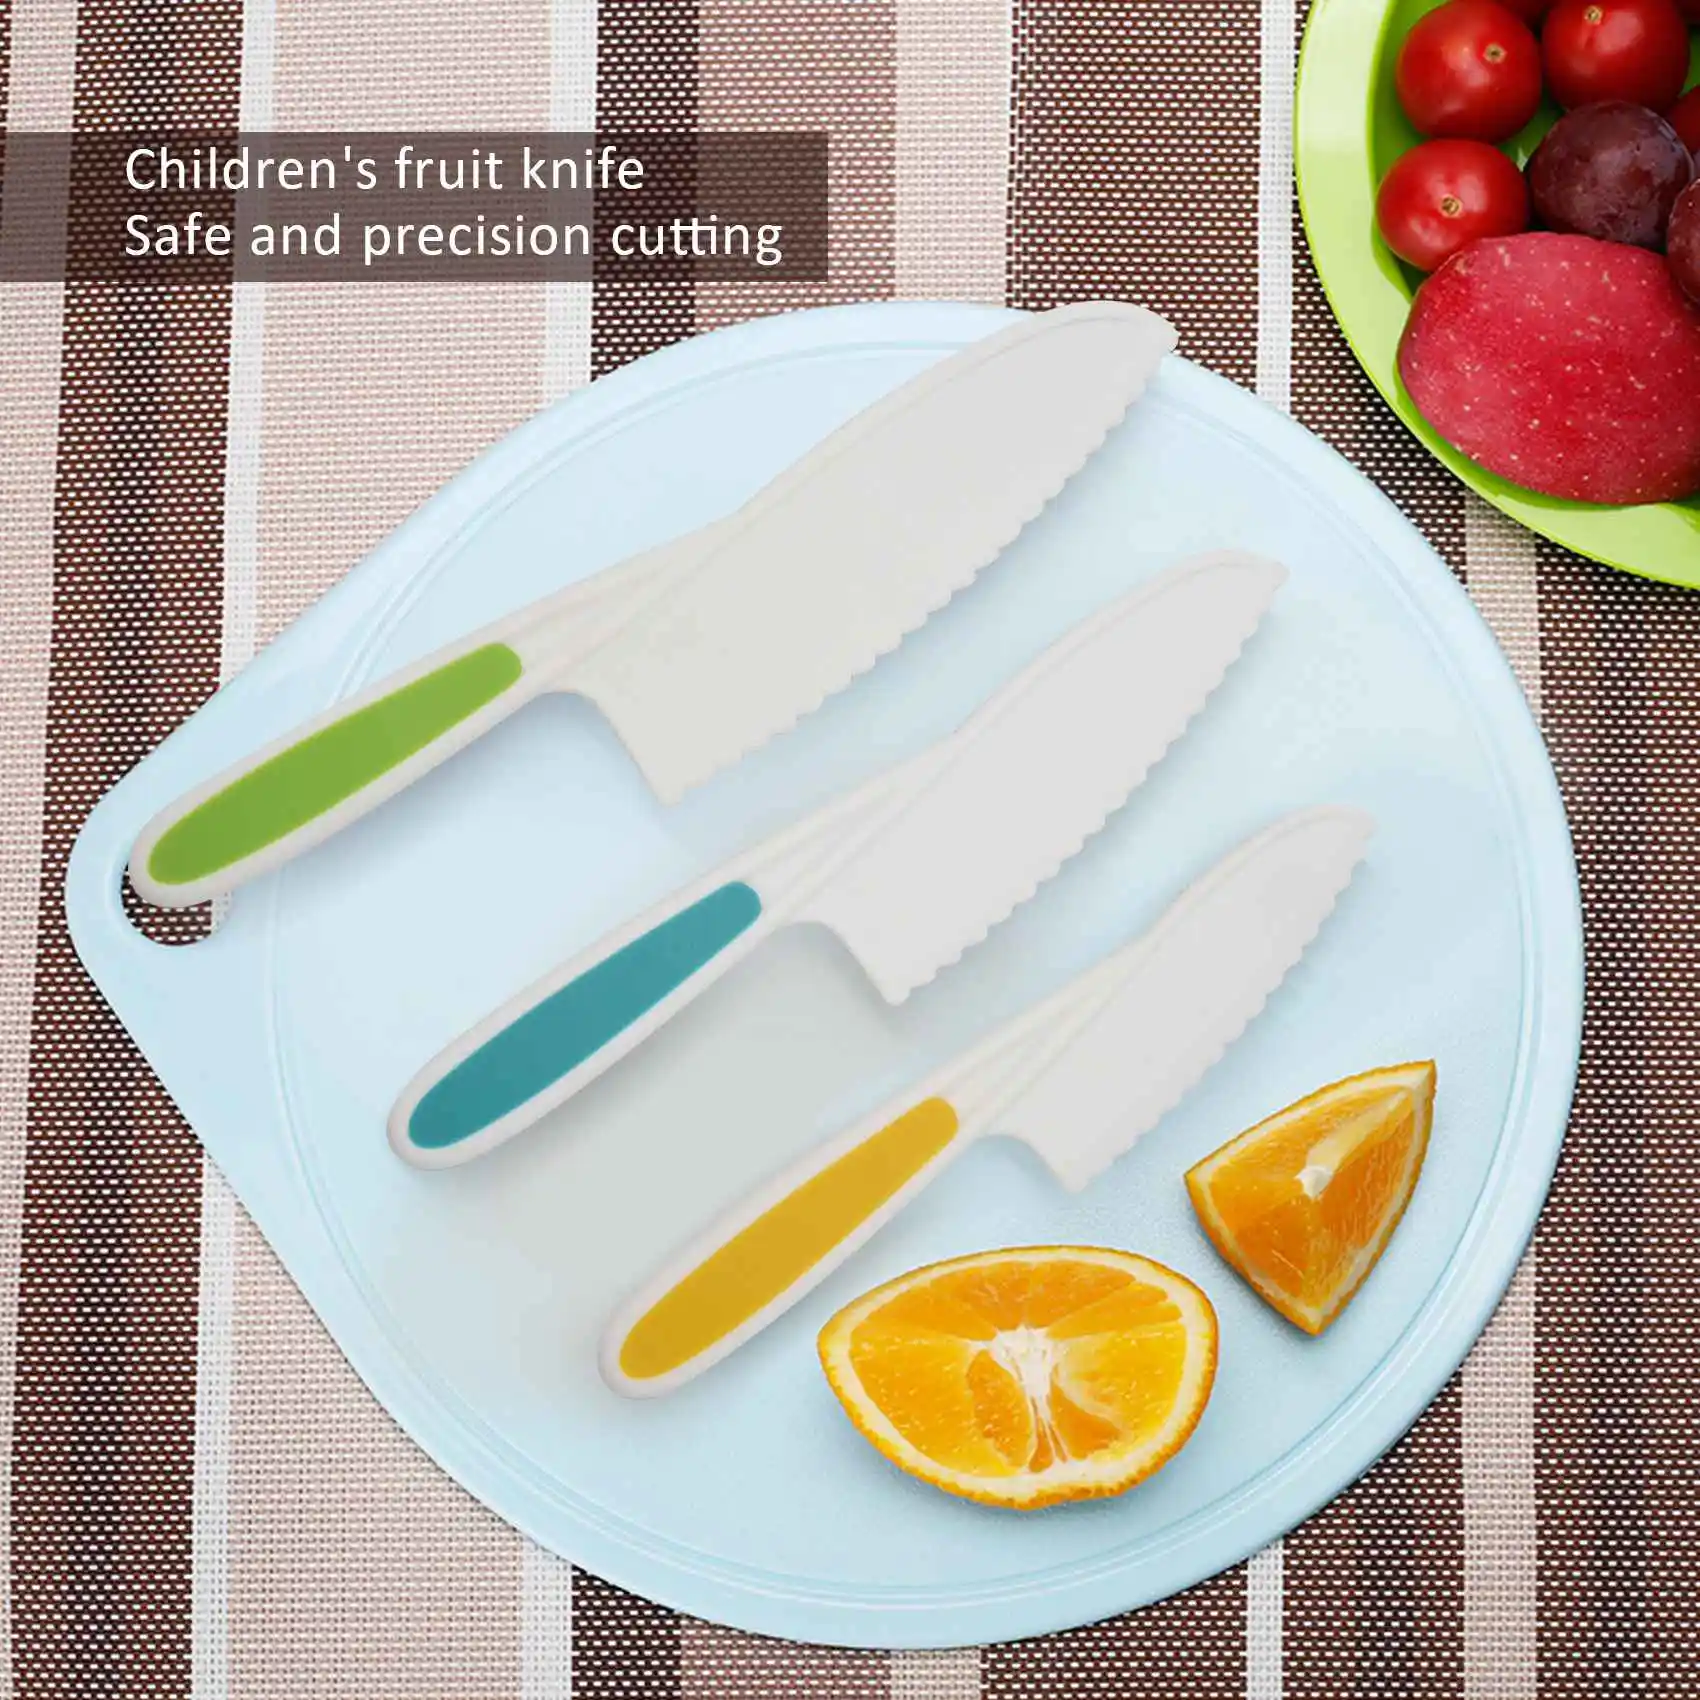 Ножи для детей, Набор кухонных ножей для выпечки из нейлона из 3 предметов, детские кухонные ножи с крепким захватом, зазубренные края